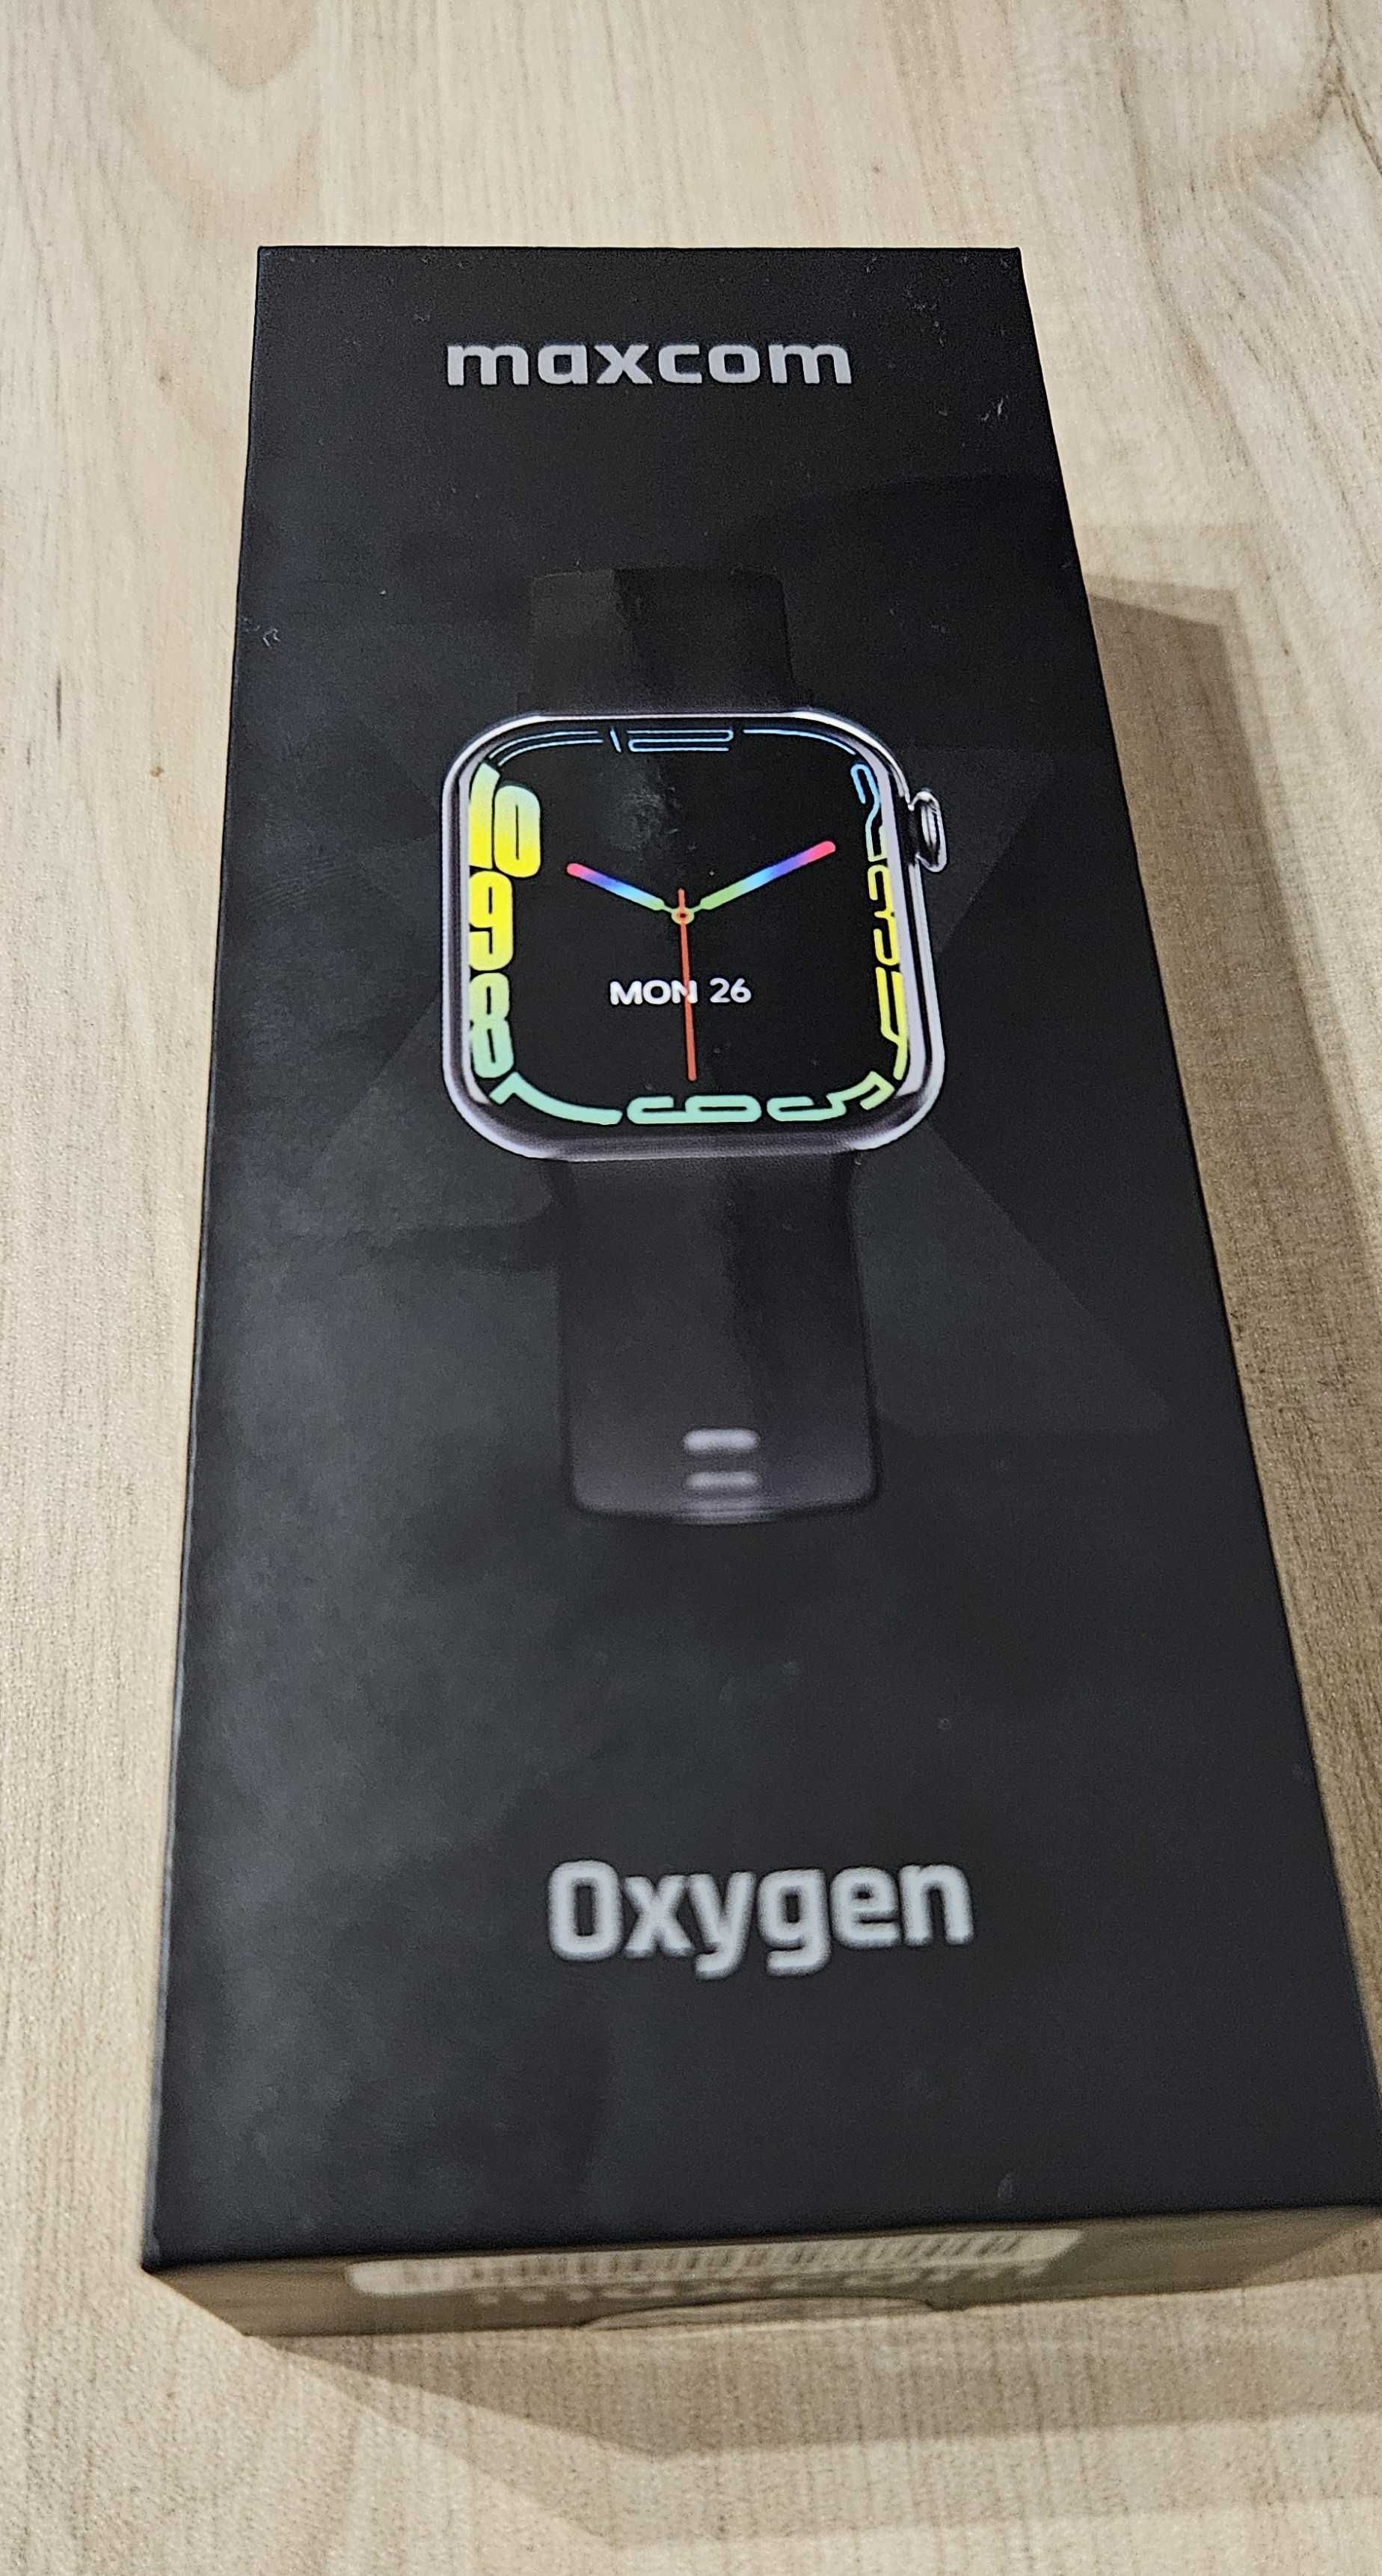 Smartwatch MaxCom FW 26 Oxygen z funkcją dzwonienia kolor czarny